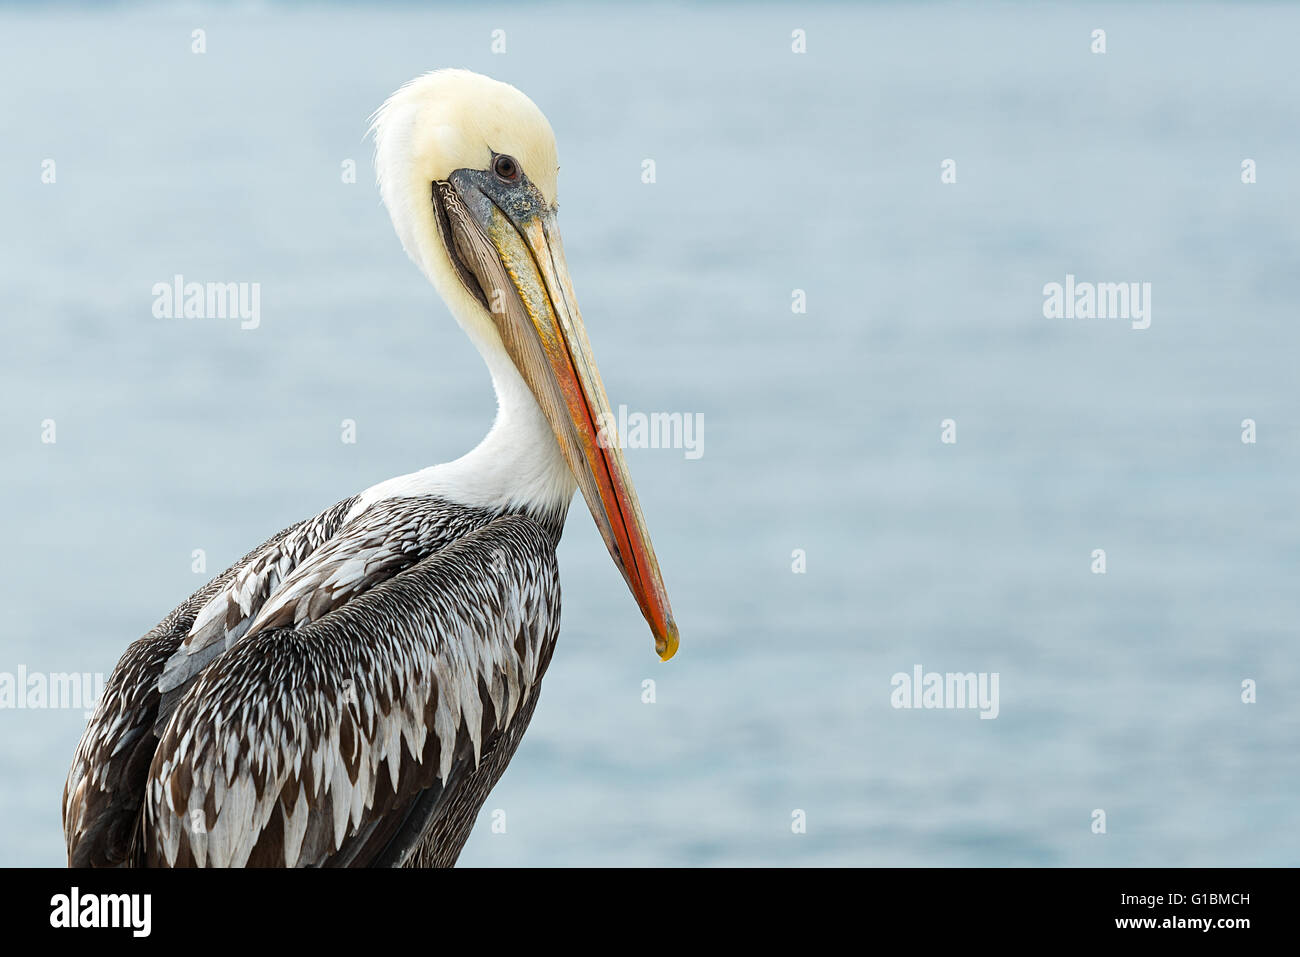 Wild Pelican in Chile Stock Photo